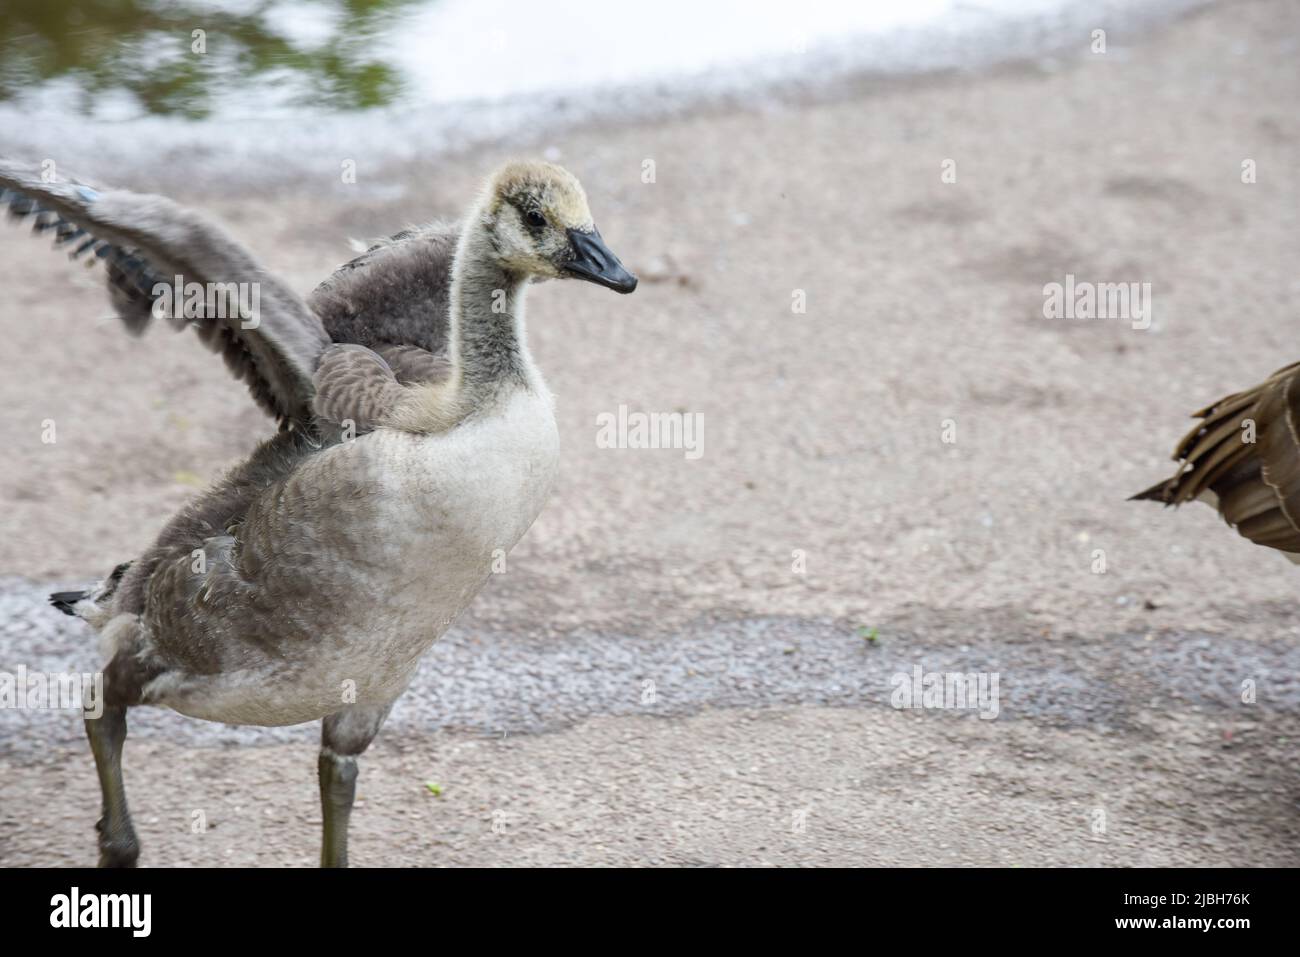 Los polluelos o goslings del ganso del bebé se alimentan en la orilla del río protegida por los gansos adultos Foto de stock